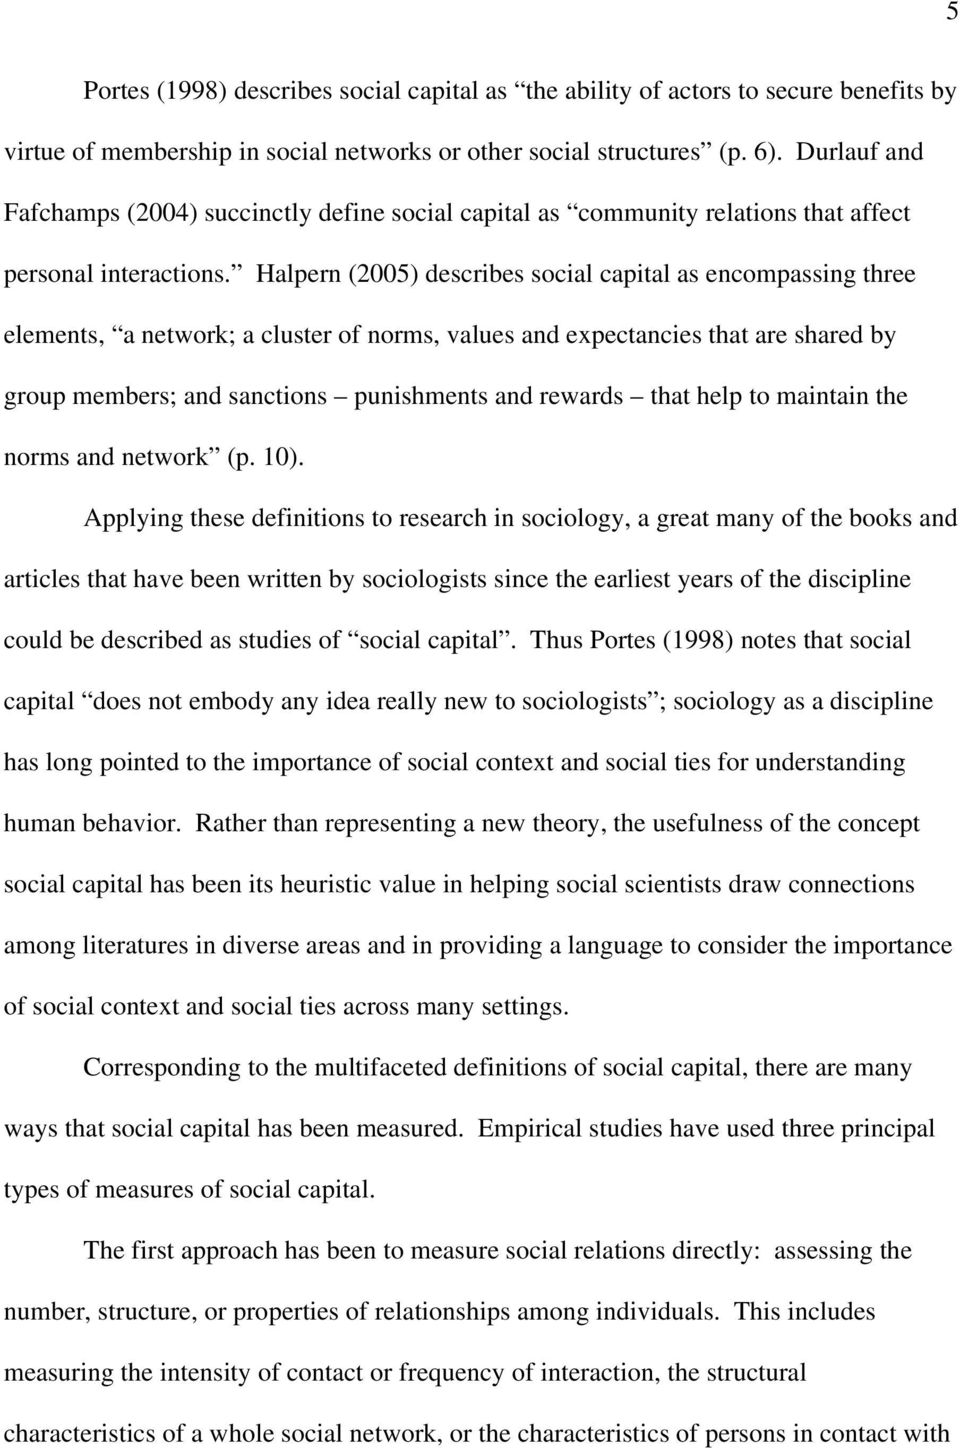 social capital sociology